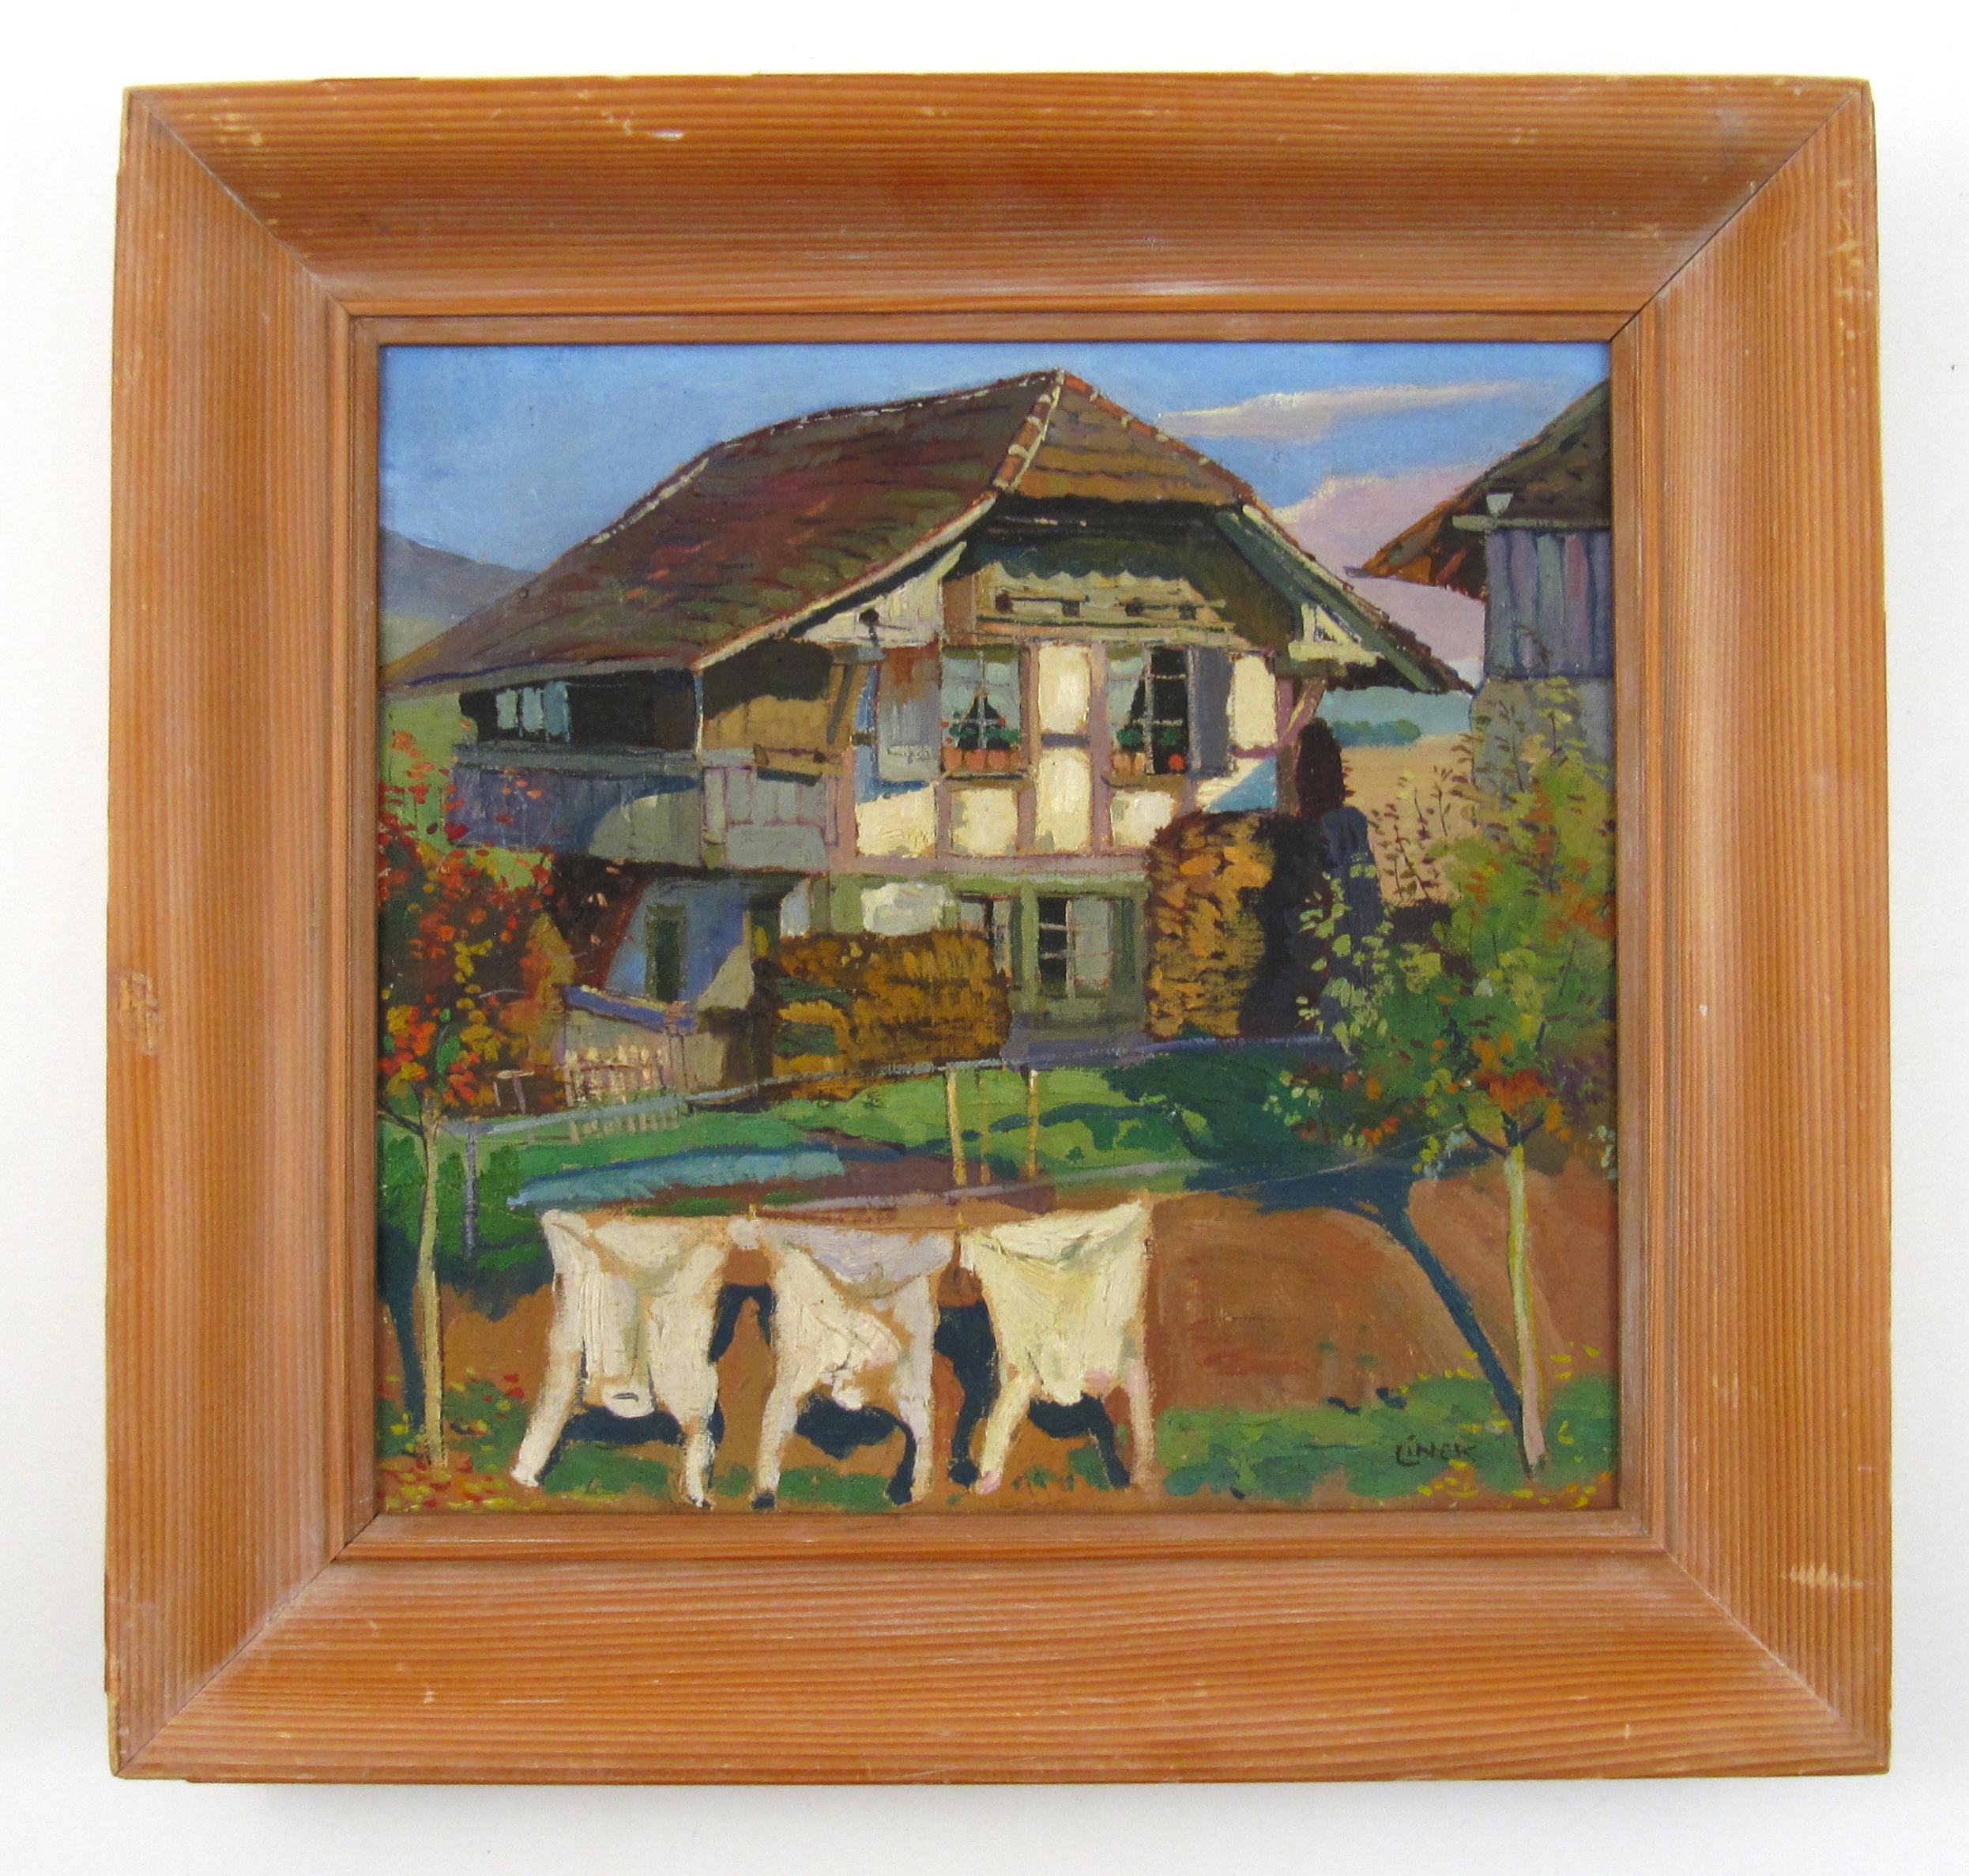 Ernst LINCK (1874 - 1935) Ferme avec école de clothesline de Berne, Suisse - Painting de Ernst Linck